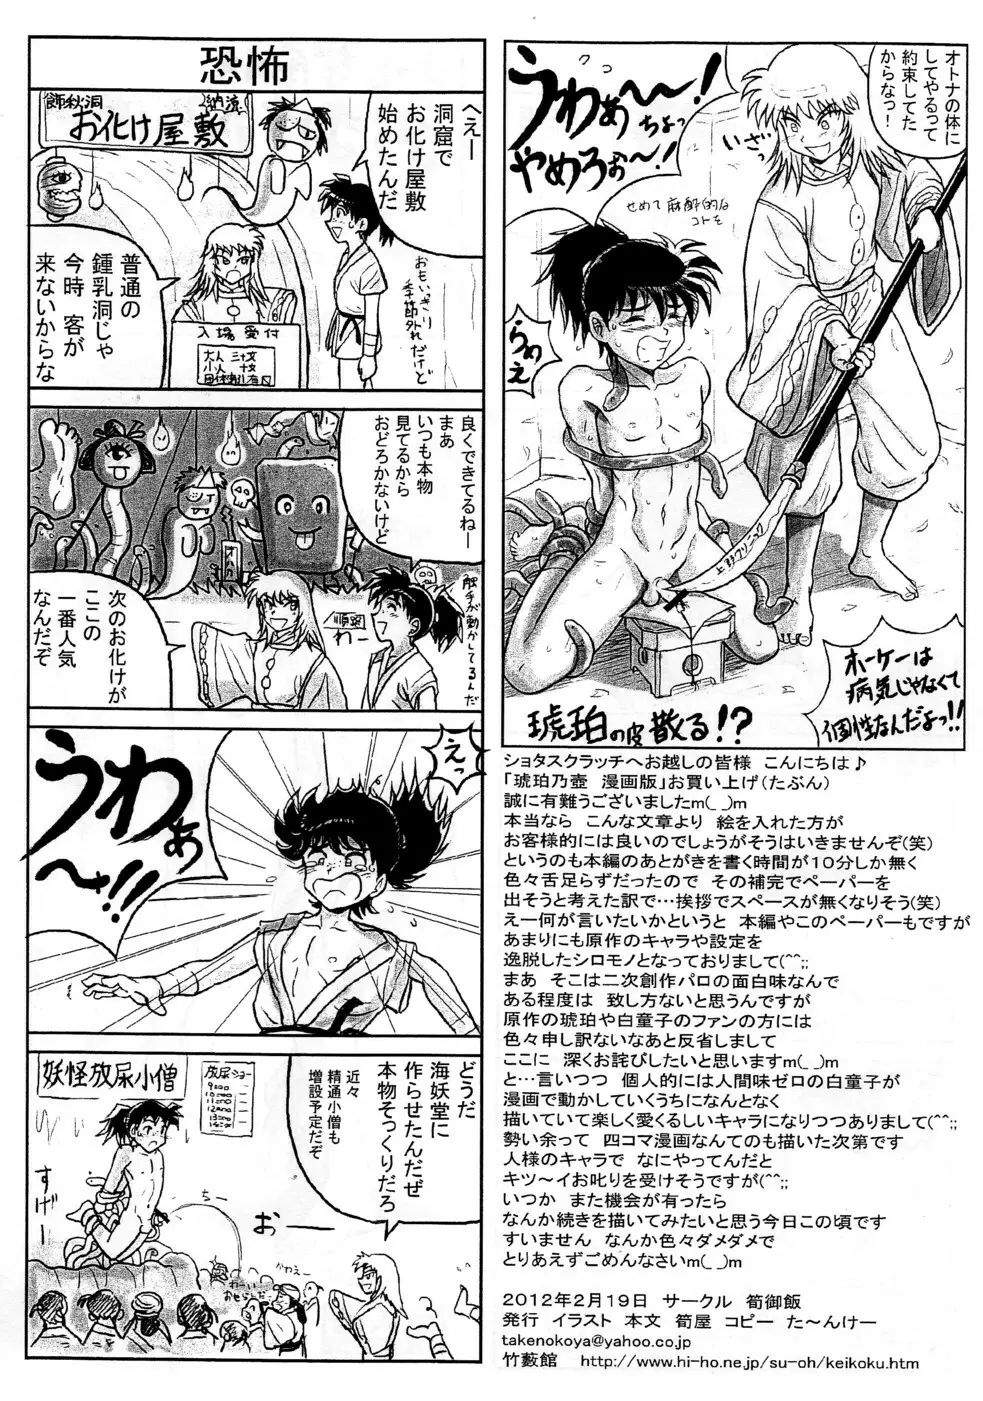 Takenokoya - Kohaku no Tsubo Manga Ban Page.6